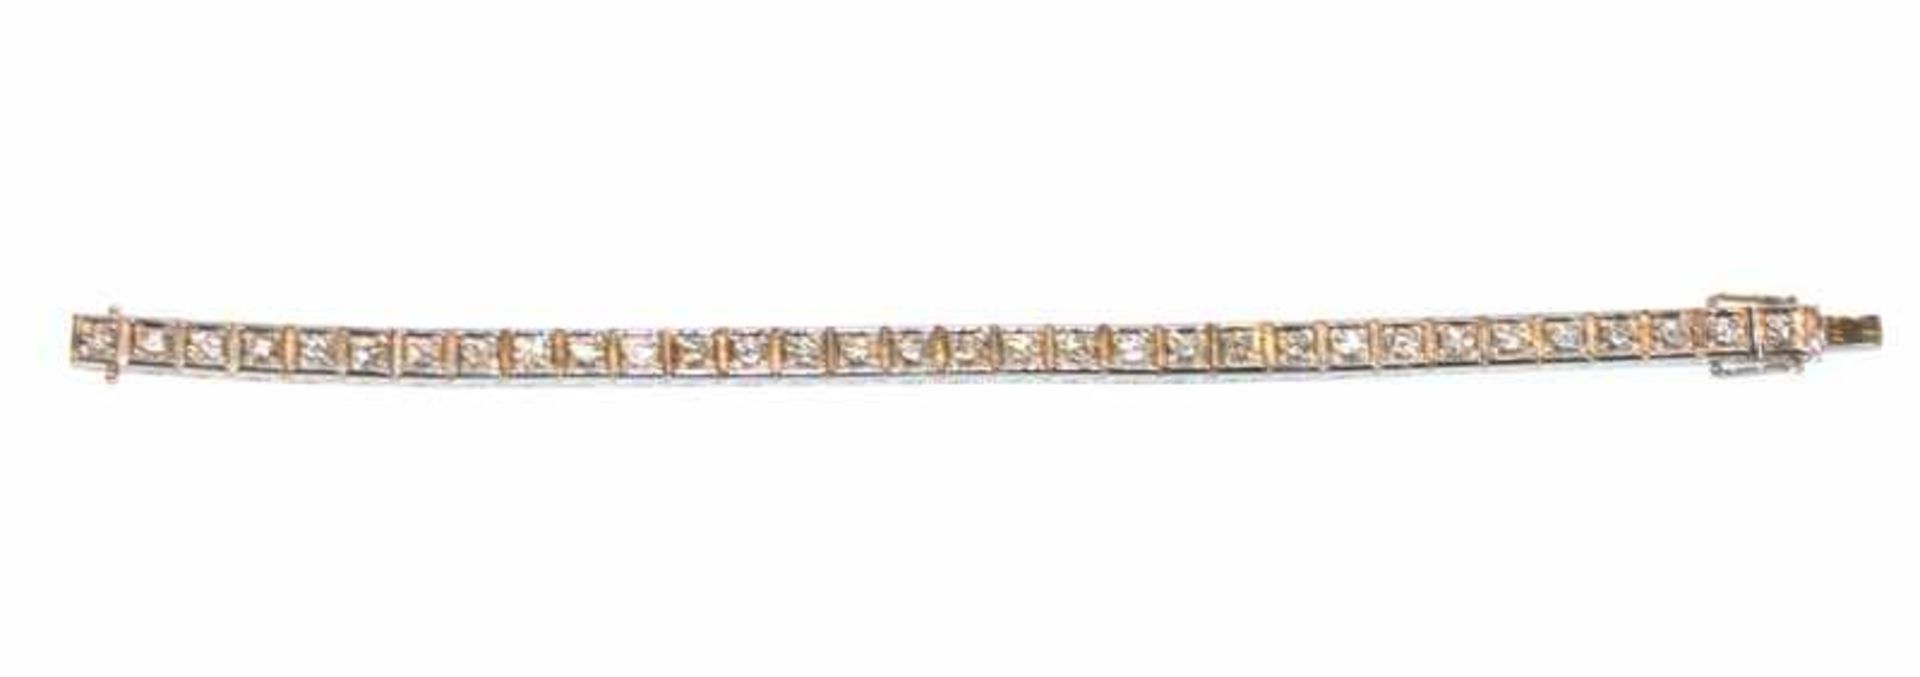 14 k Weißgold Armband mit 32 Diamanten, zus. ca. 2,5 ct., 37 gr., L 18 cm, klassische Handarbeit